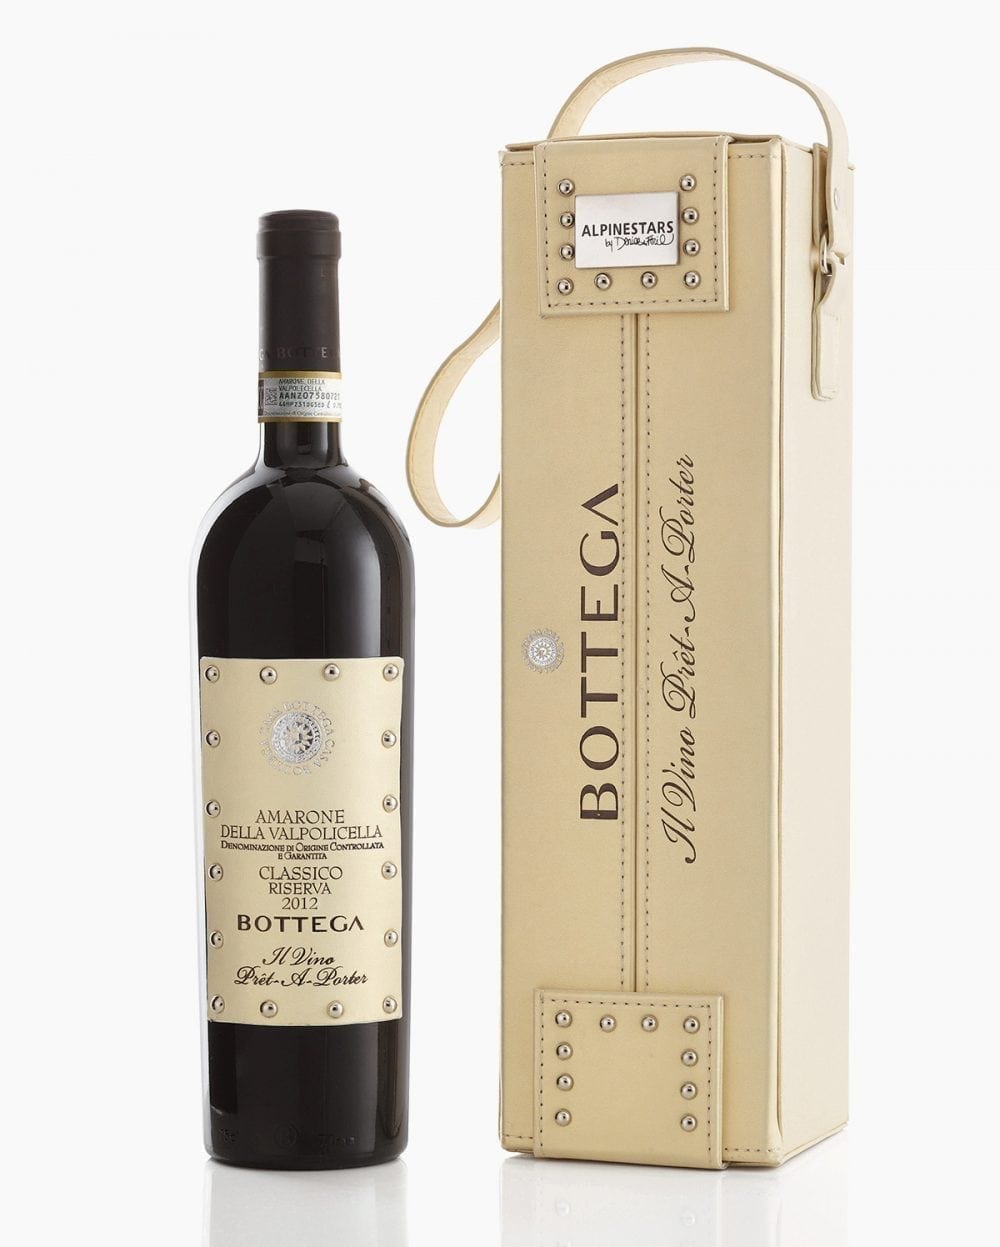 Soave classico doc - Italian White Wine - Bottega Spa